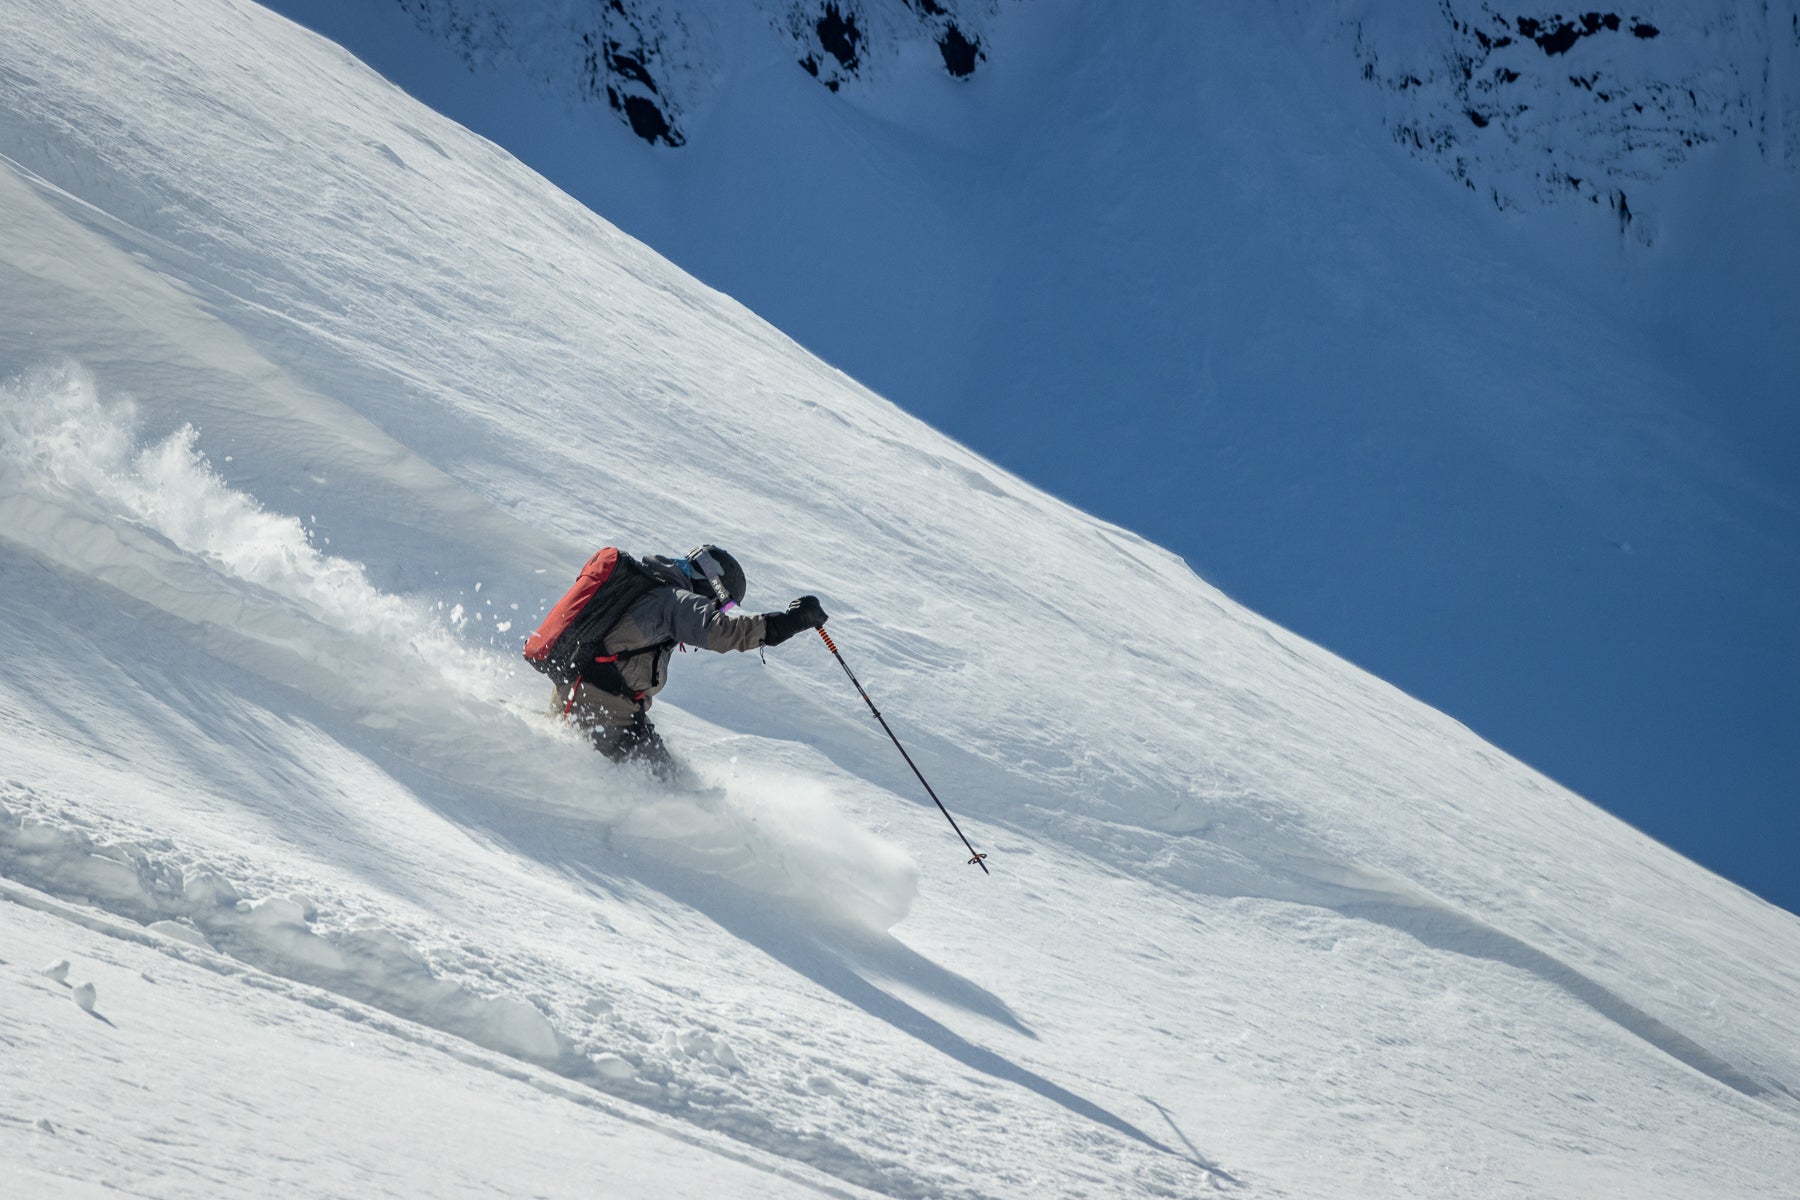 Skier on steeps